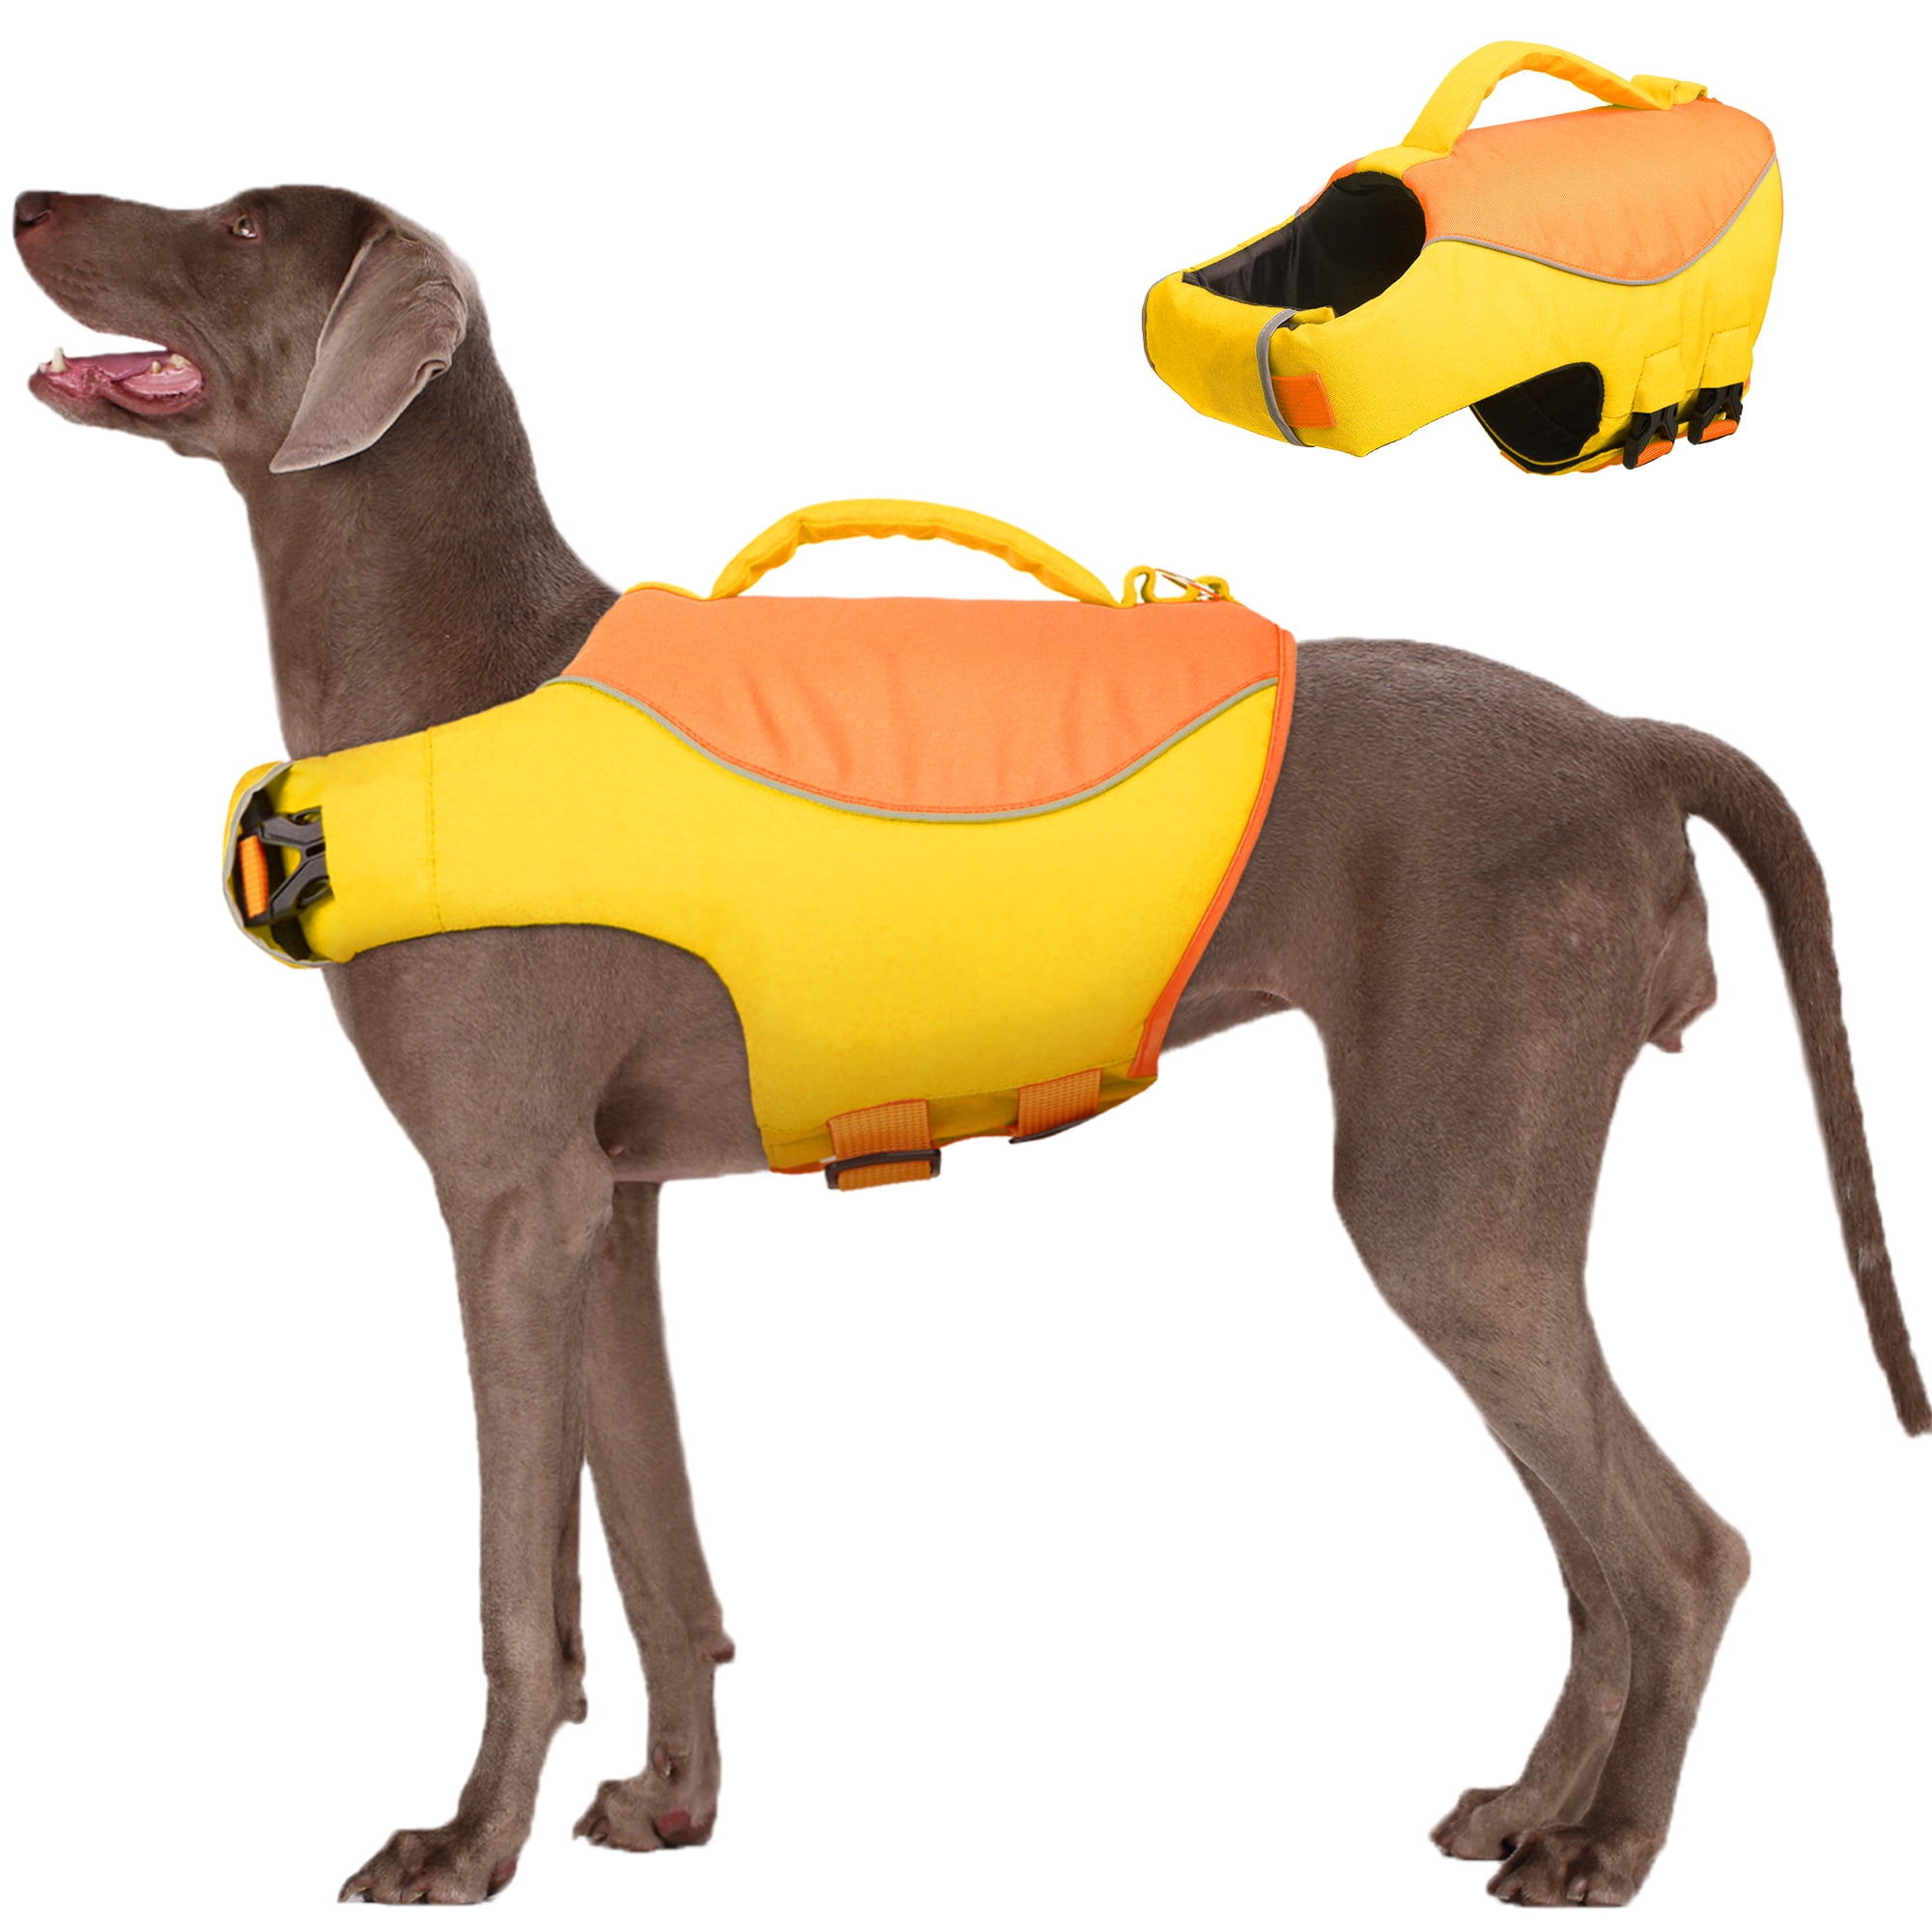 Kuoser Dog Life Jacket, Dog Life Vest for Swimming Boating, Reflective ...